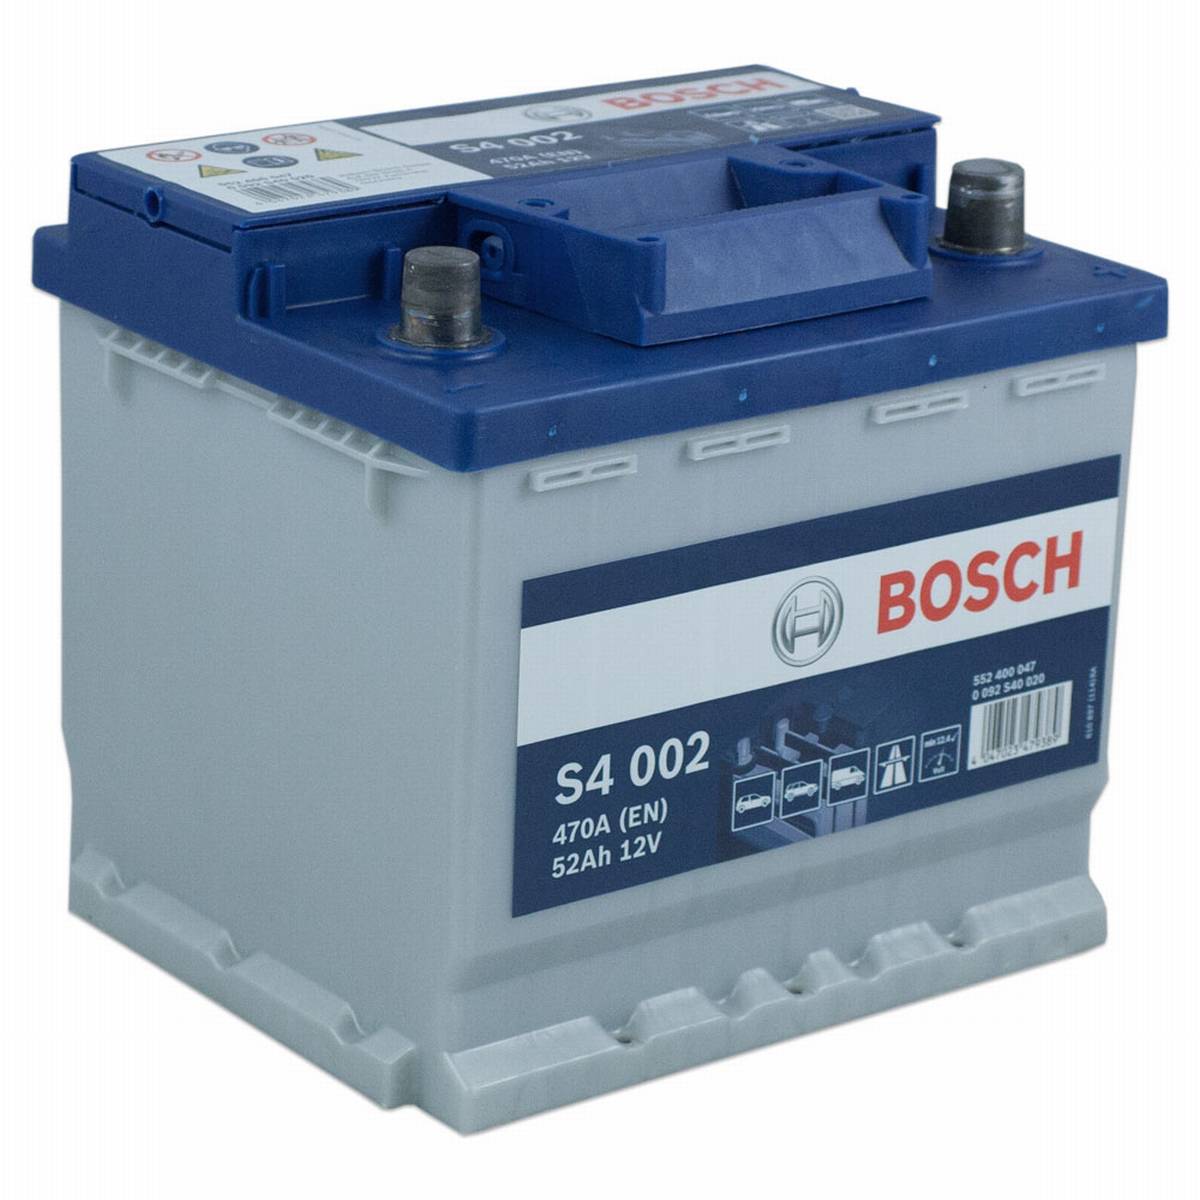 Bosch car battery S4 002 552 400 047 12V 52Ah 470A/EN, Starter batteries, Boots & Marine, Batteries by application